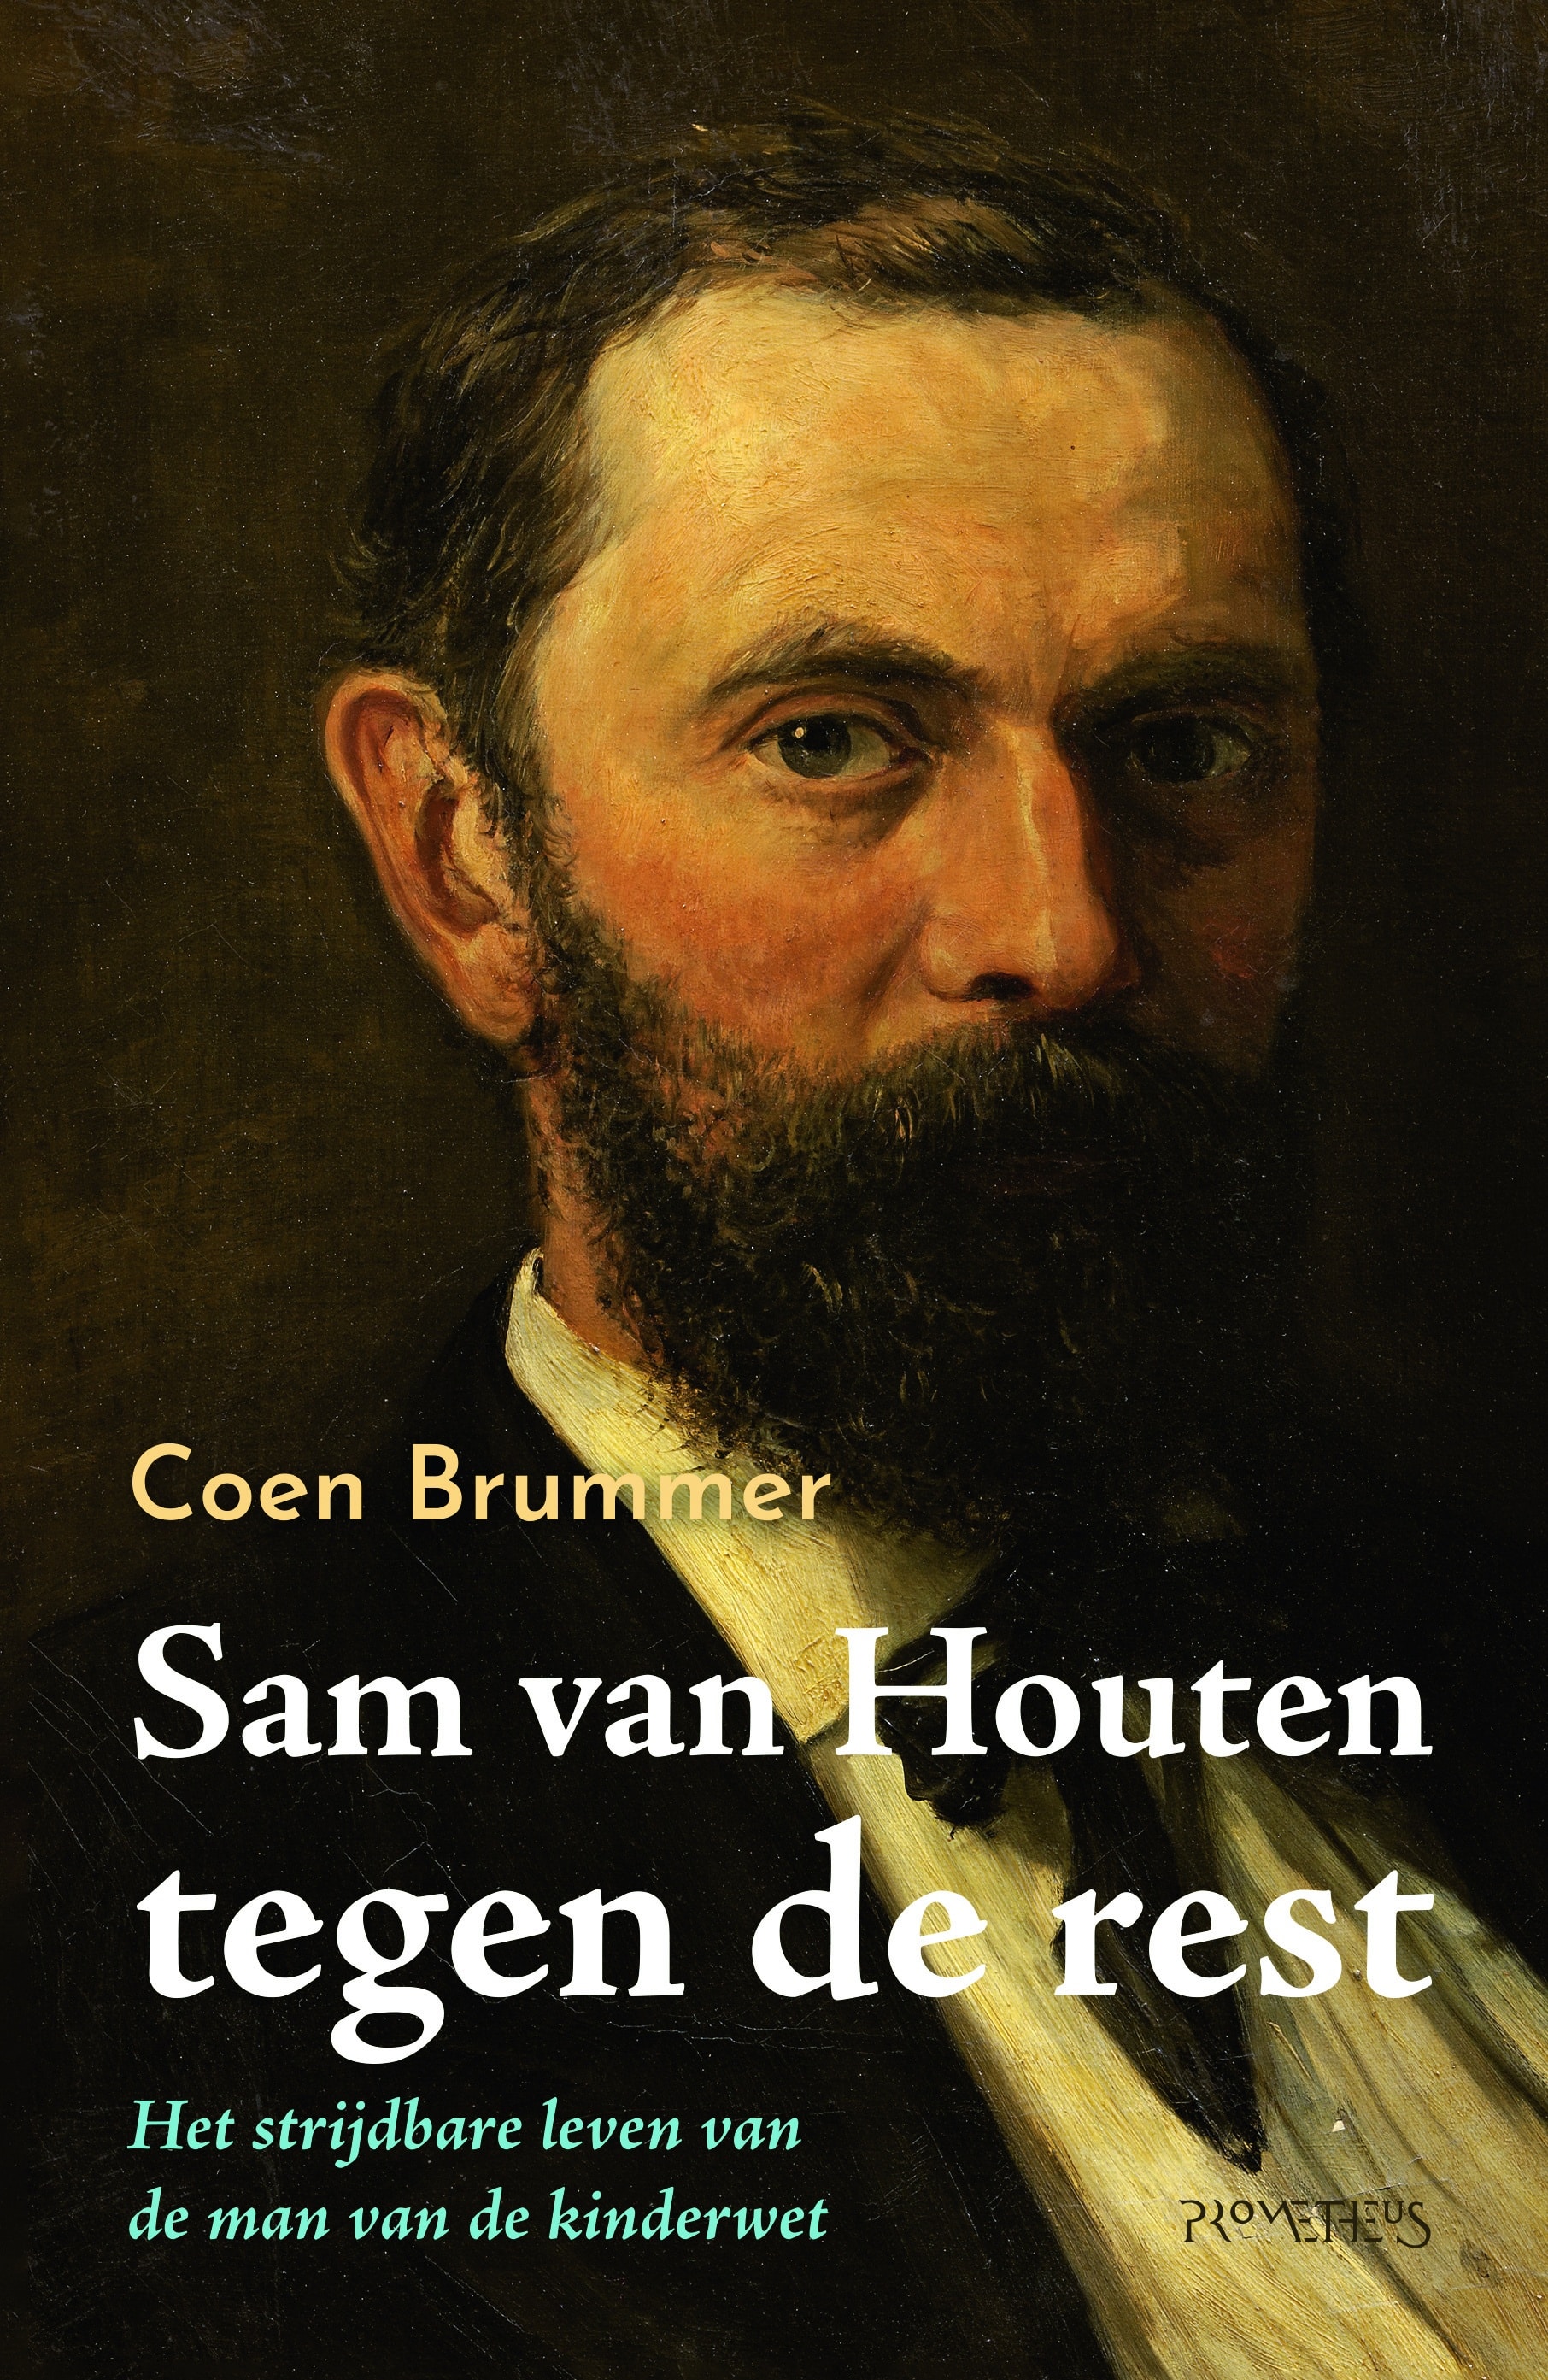 Coen Brummer besproken in Nederlands Dagblad